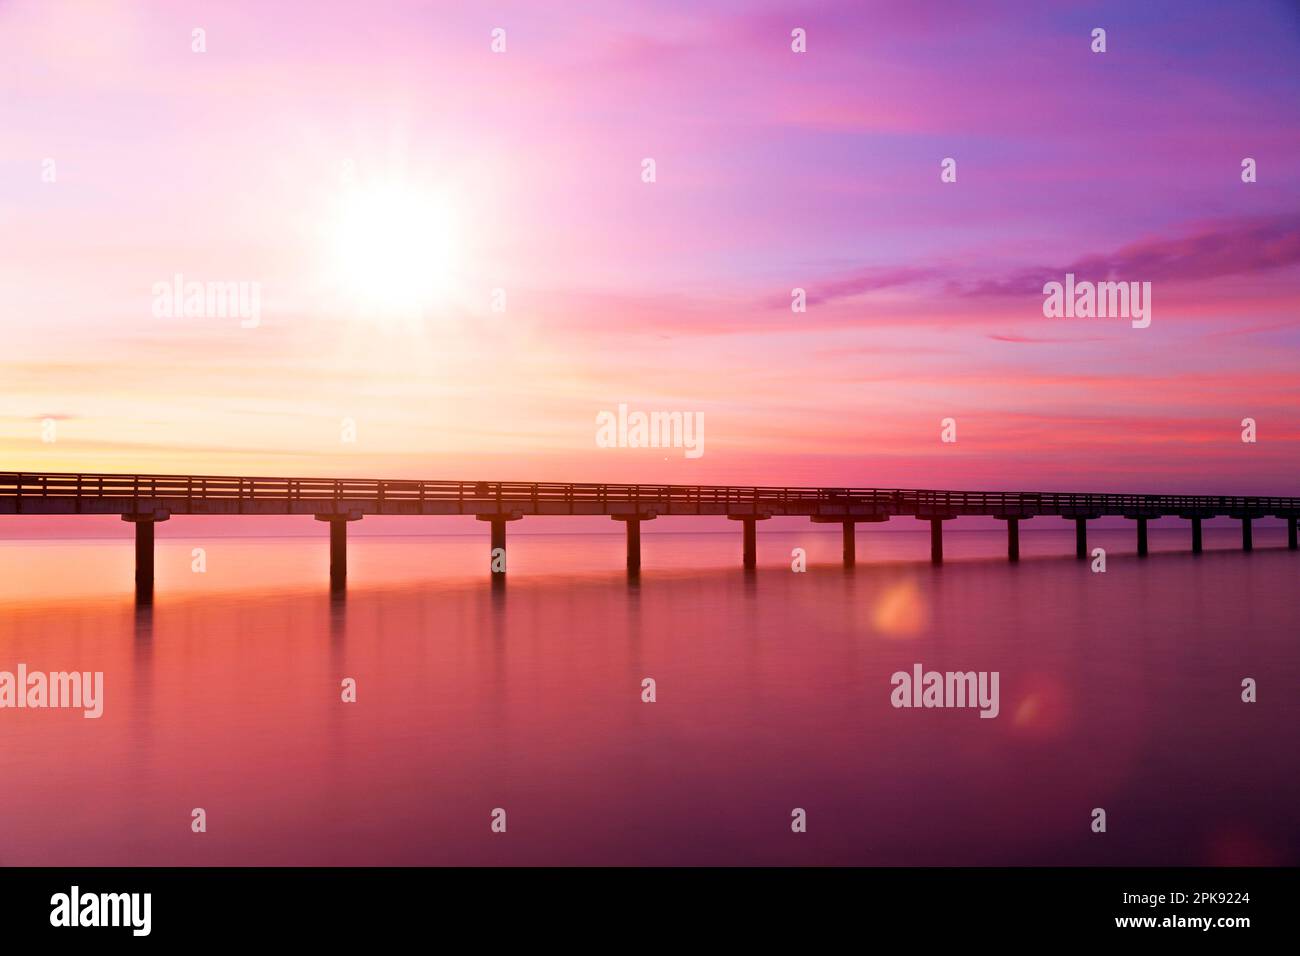 Pont sur l'eau au lever du soleil dans une ambiance de couleur pourpre Banque D'Images